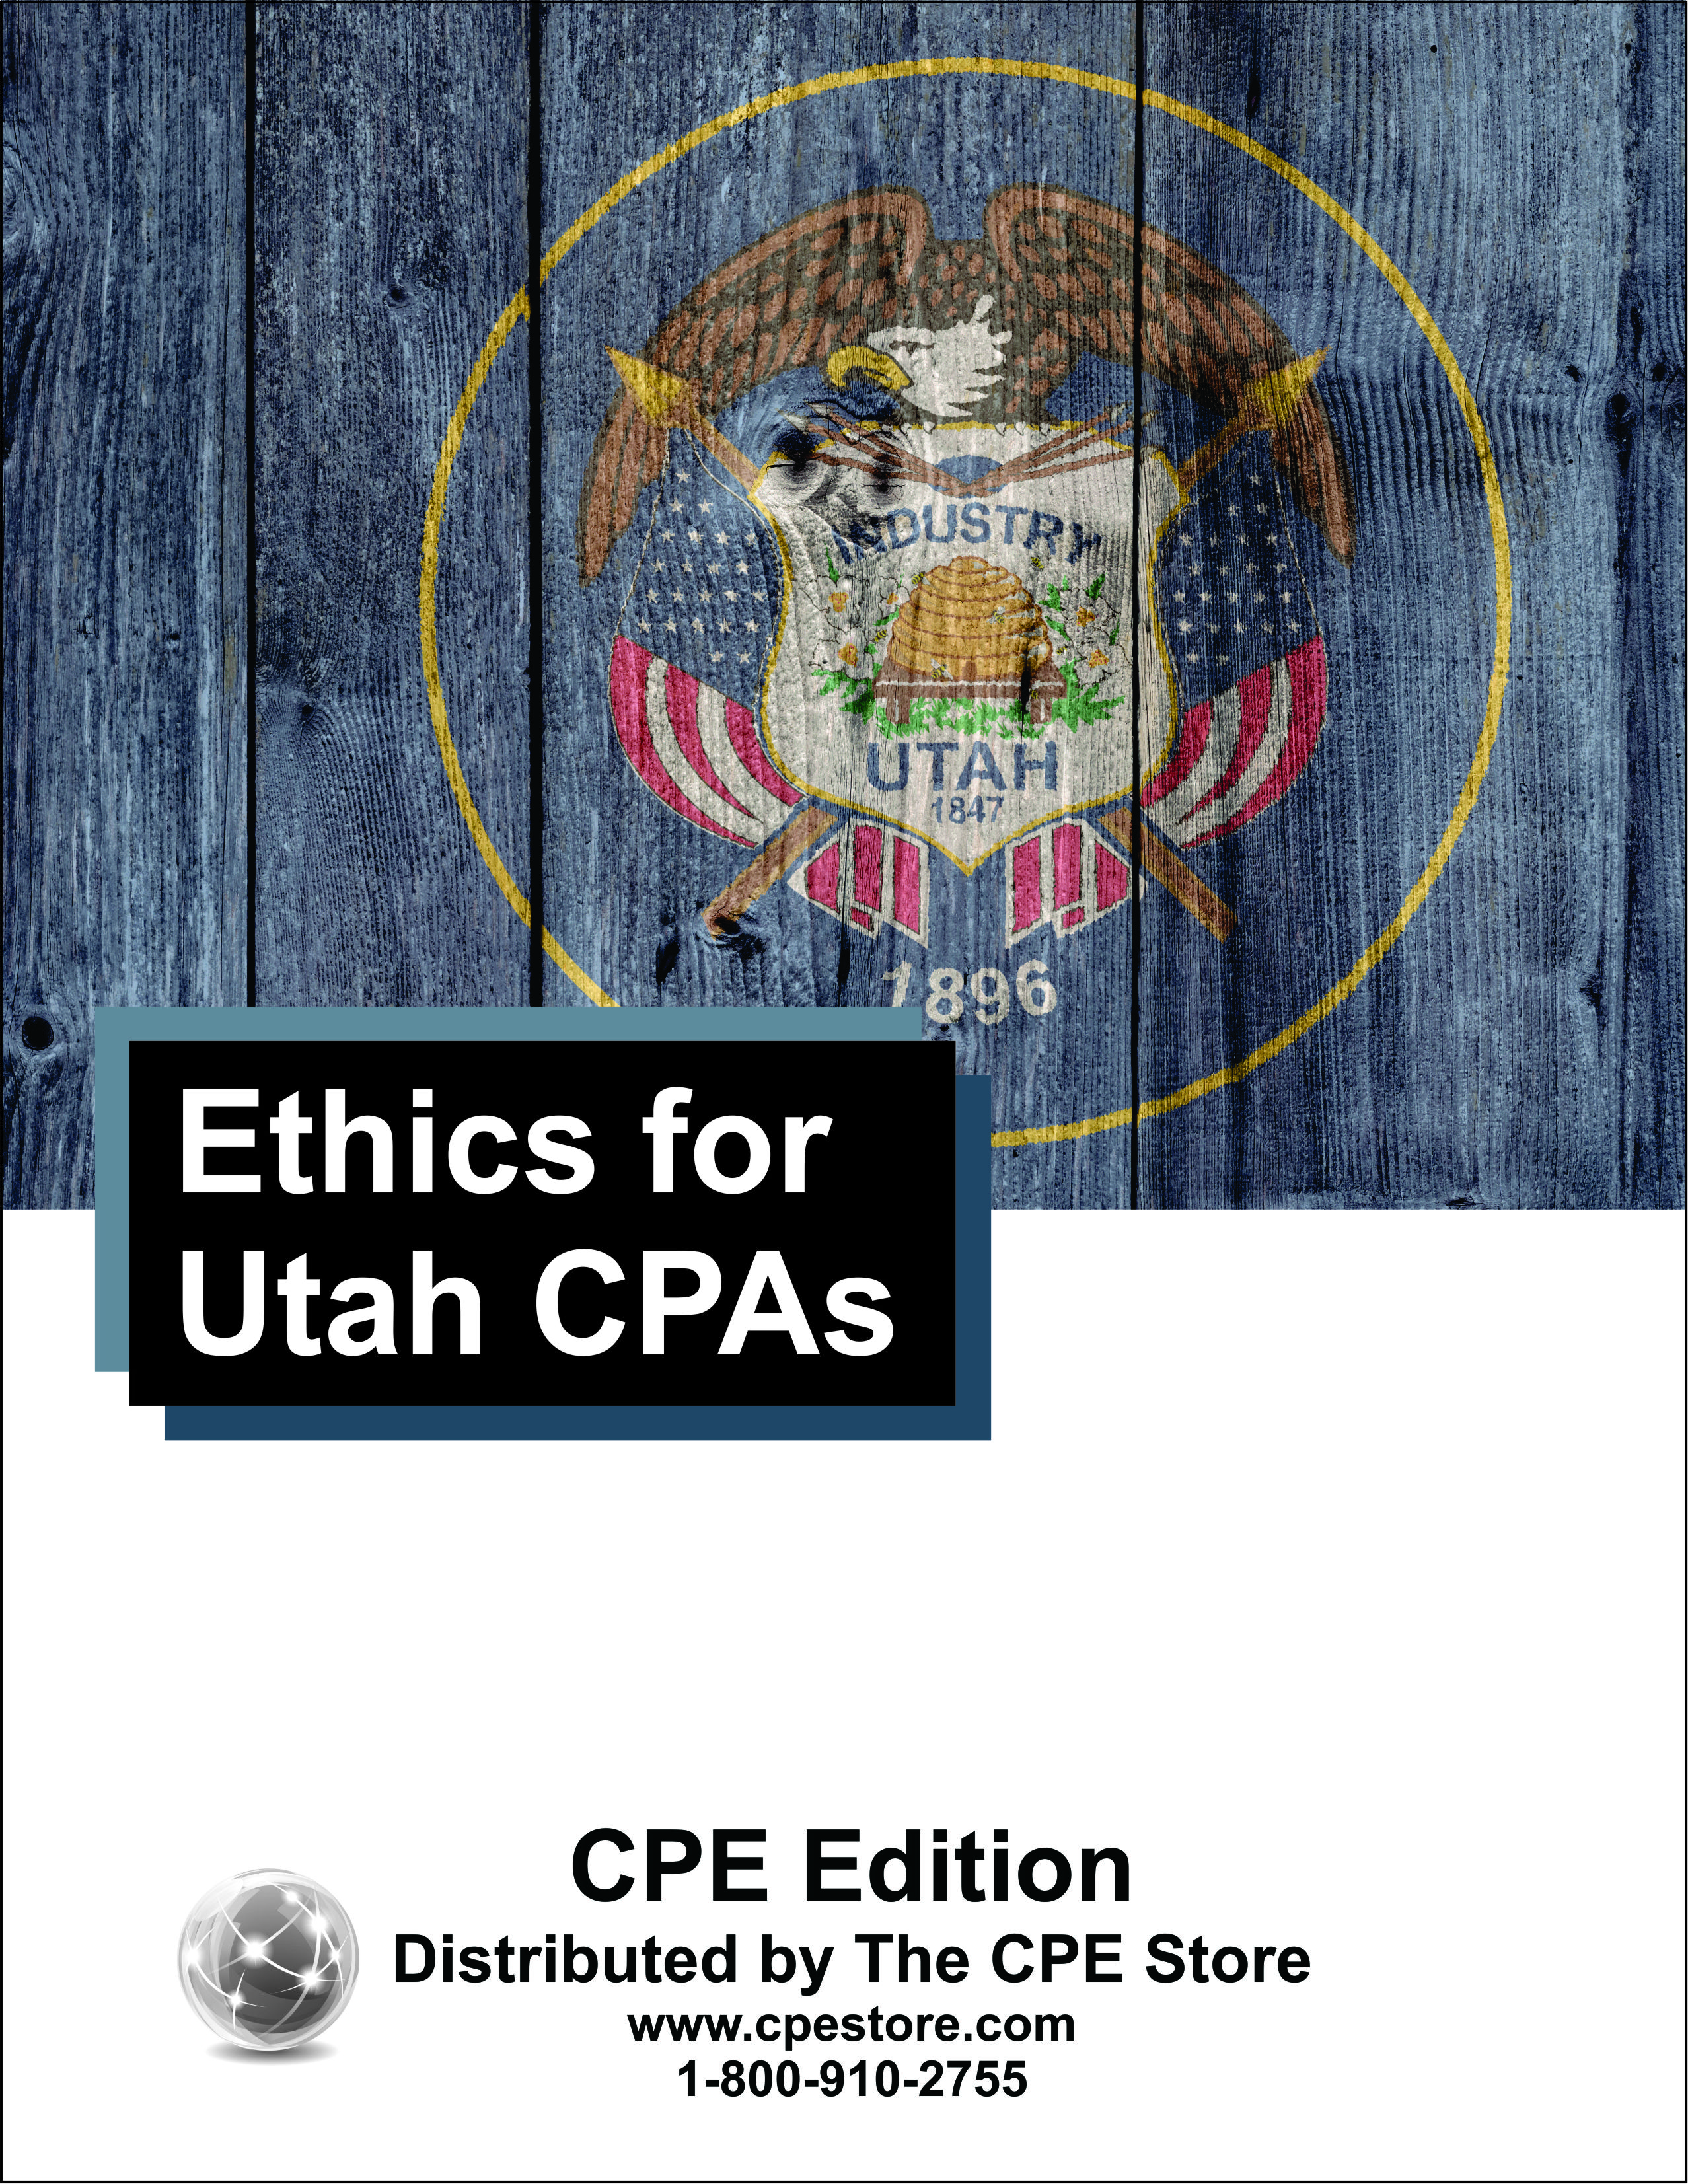 Ethics for Utah CPAs